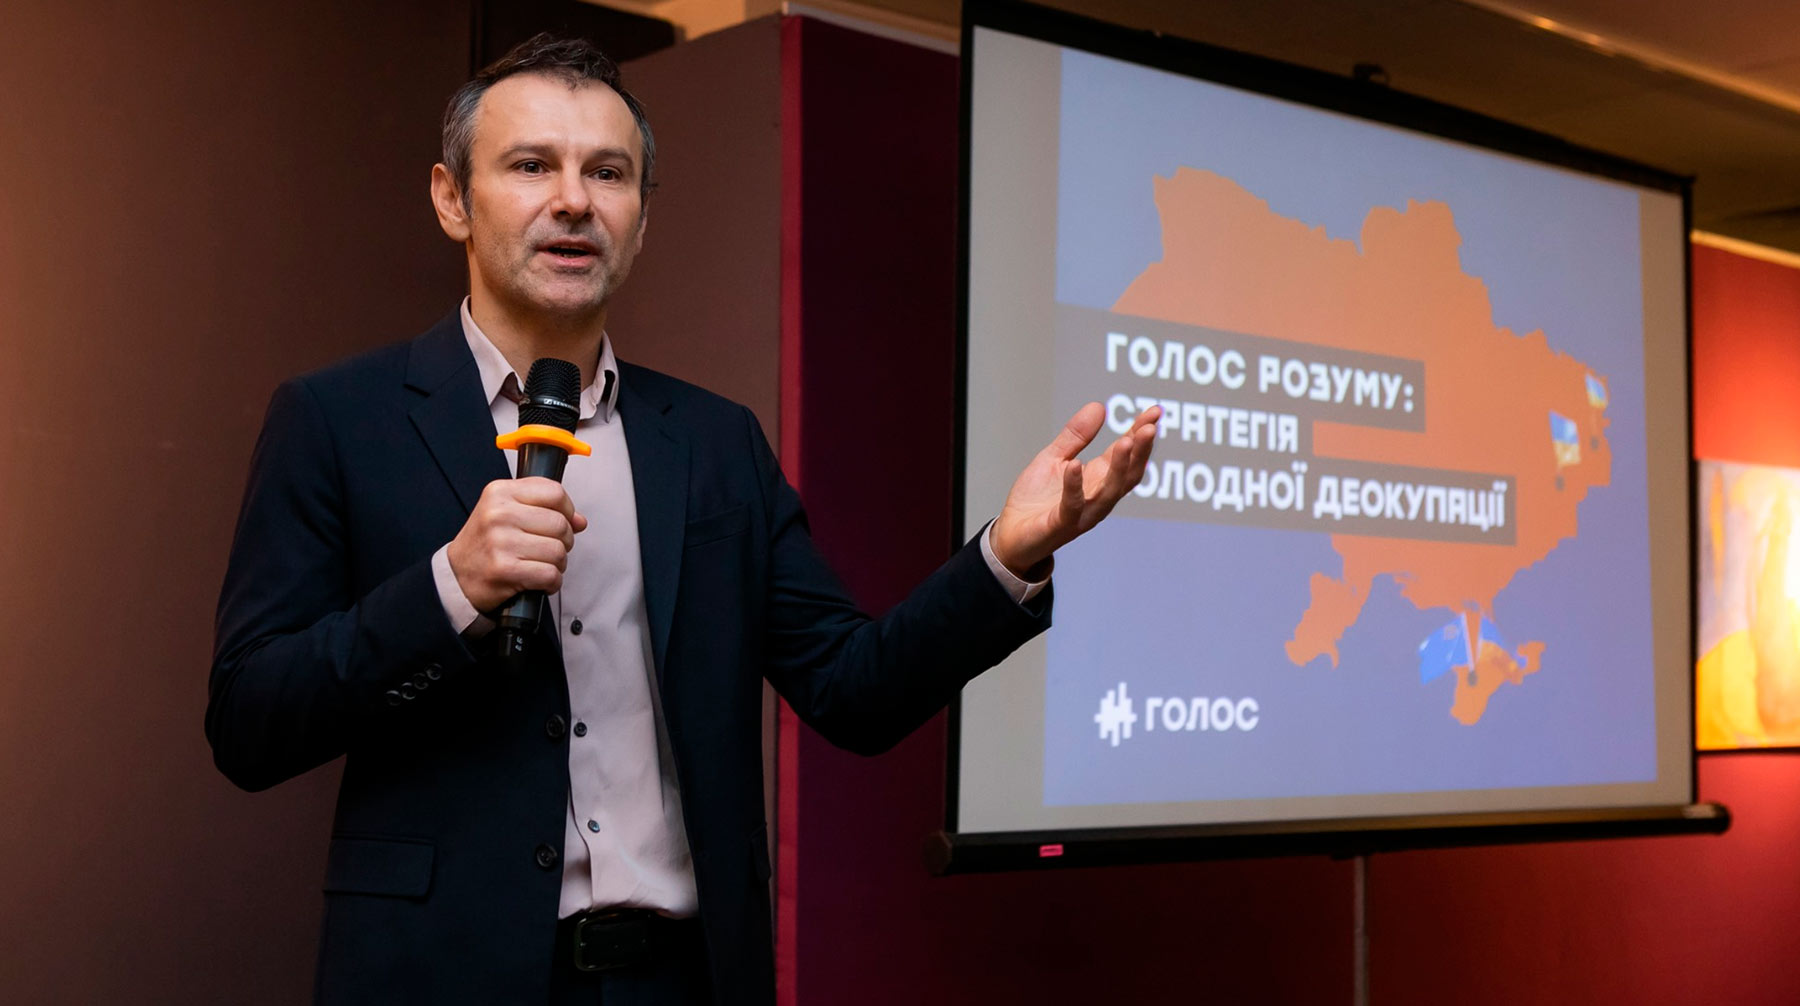 Экс-лидер партии «Голос» заявил, что считает свою миссию в украинском парламенте выполненной Святослав Вакарчук